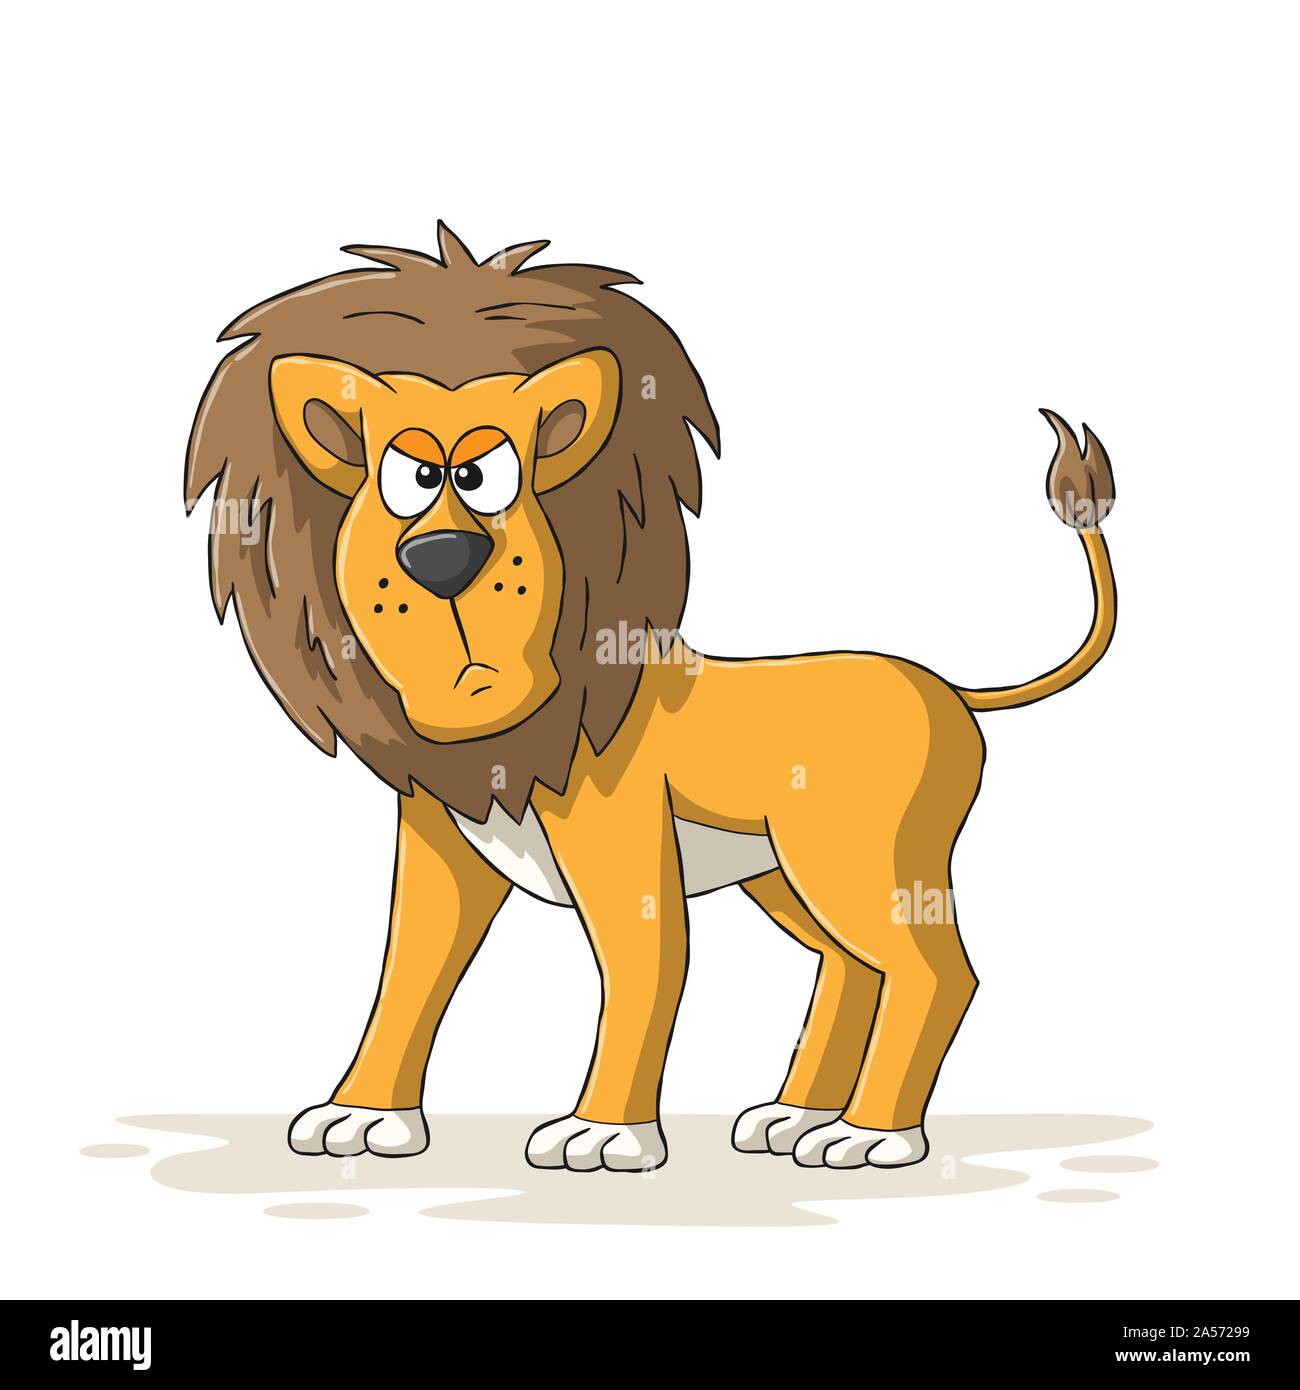 Wütend cartoon Lion. Hand Vector Illustration mit separaten Ebenen gezeichnet. Stock Vektor